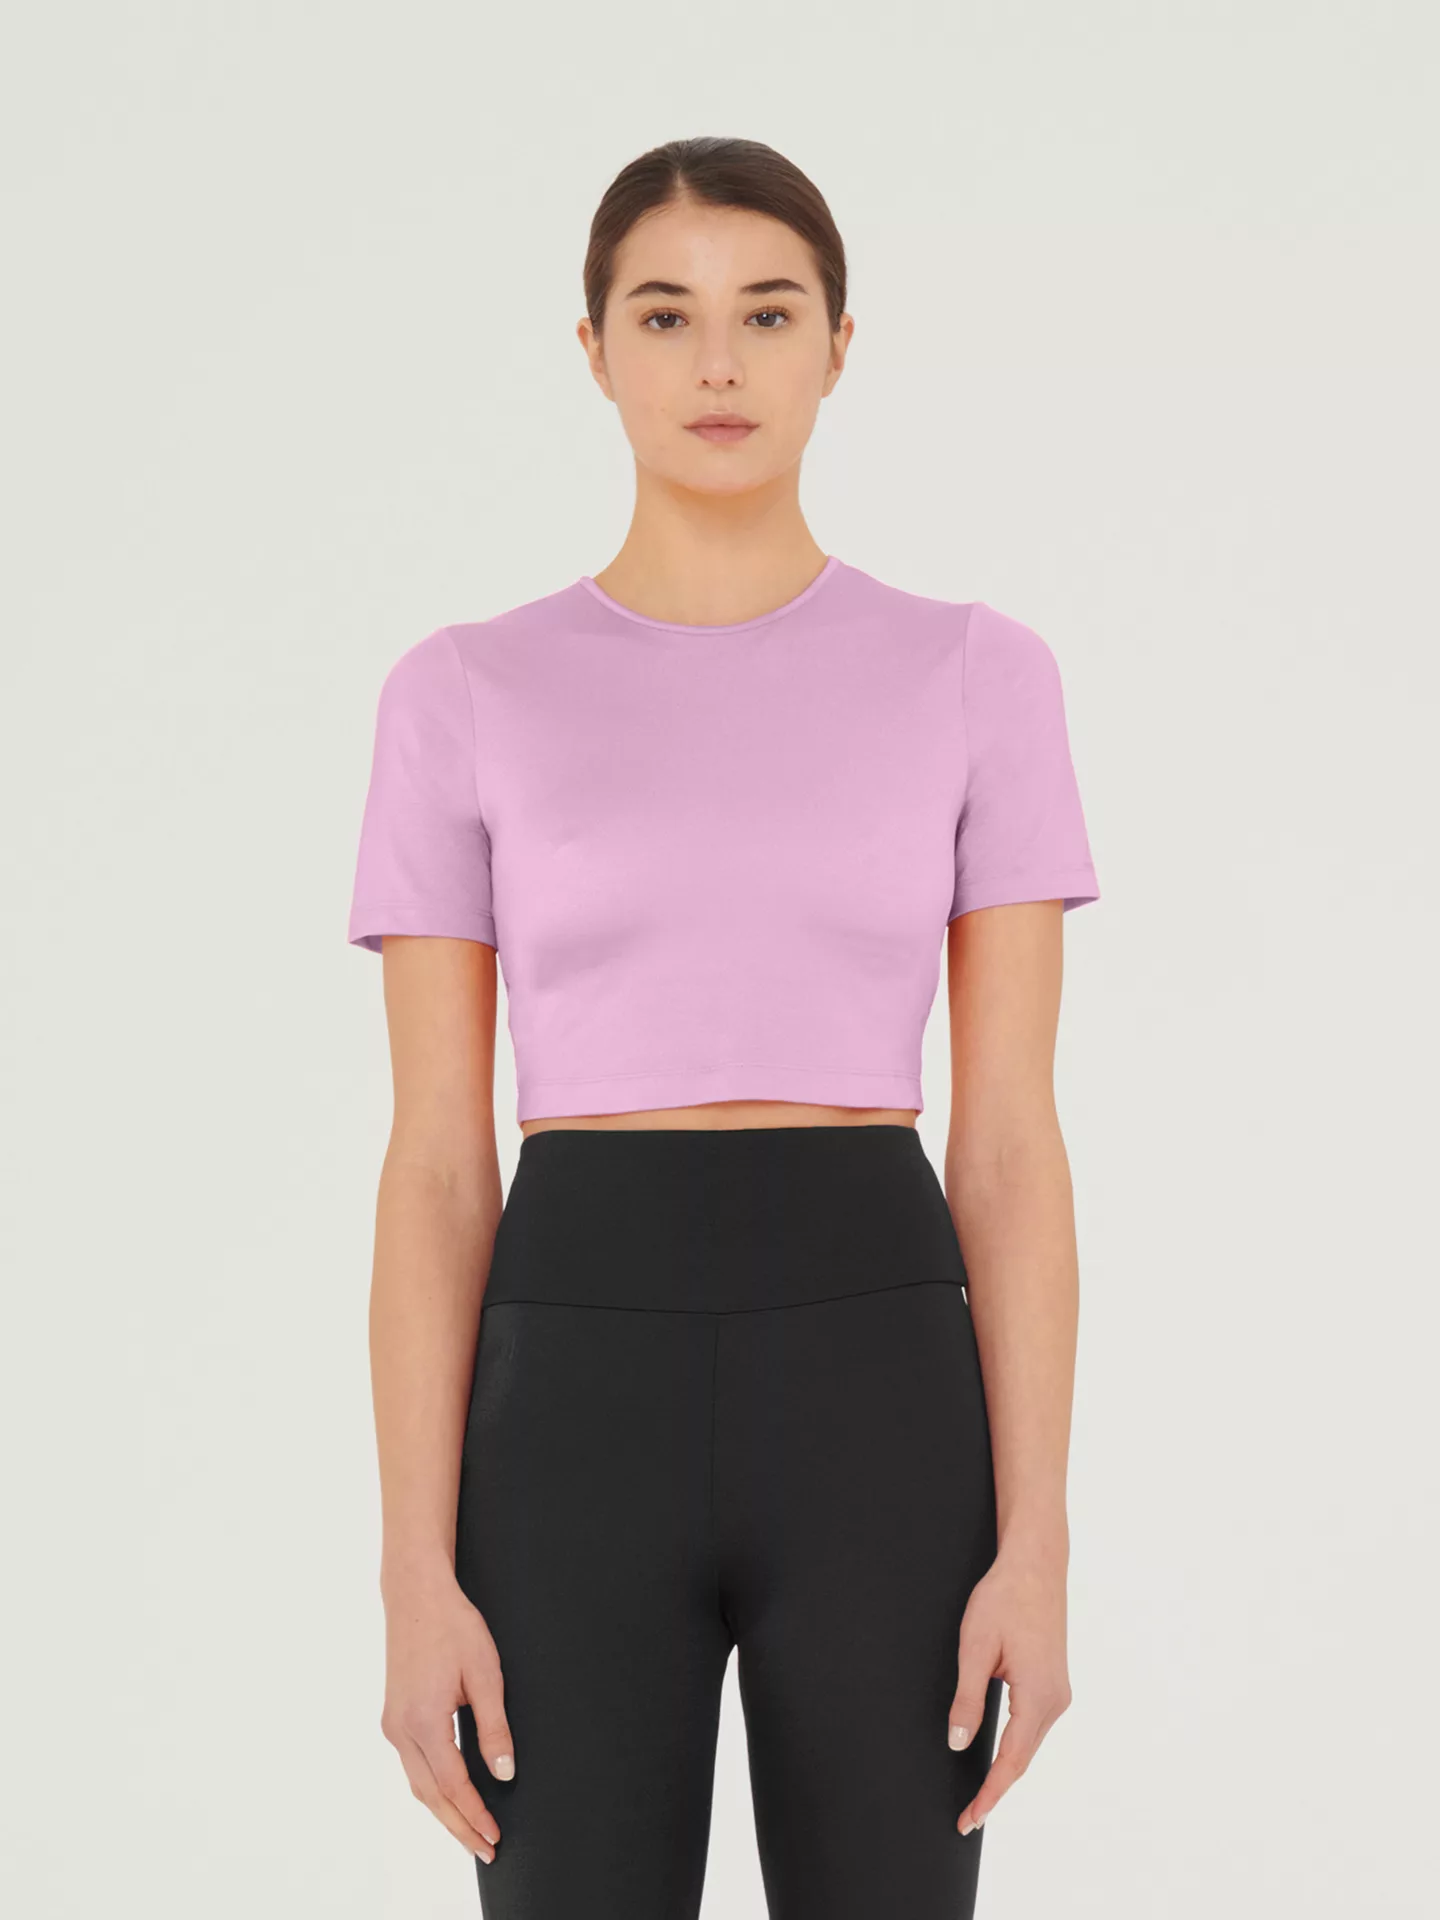 Wolford - The Workout Top Short Sleeves, Frau, prisma pink, Größe: M günstig online kaufen